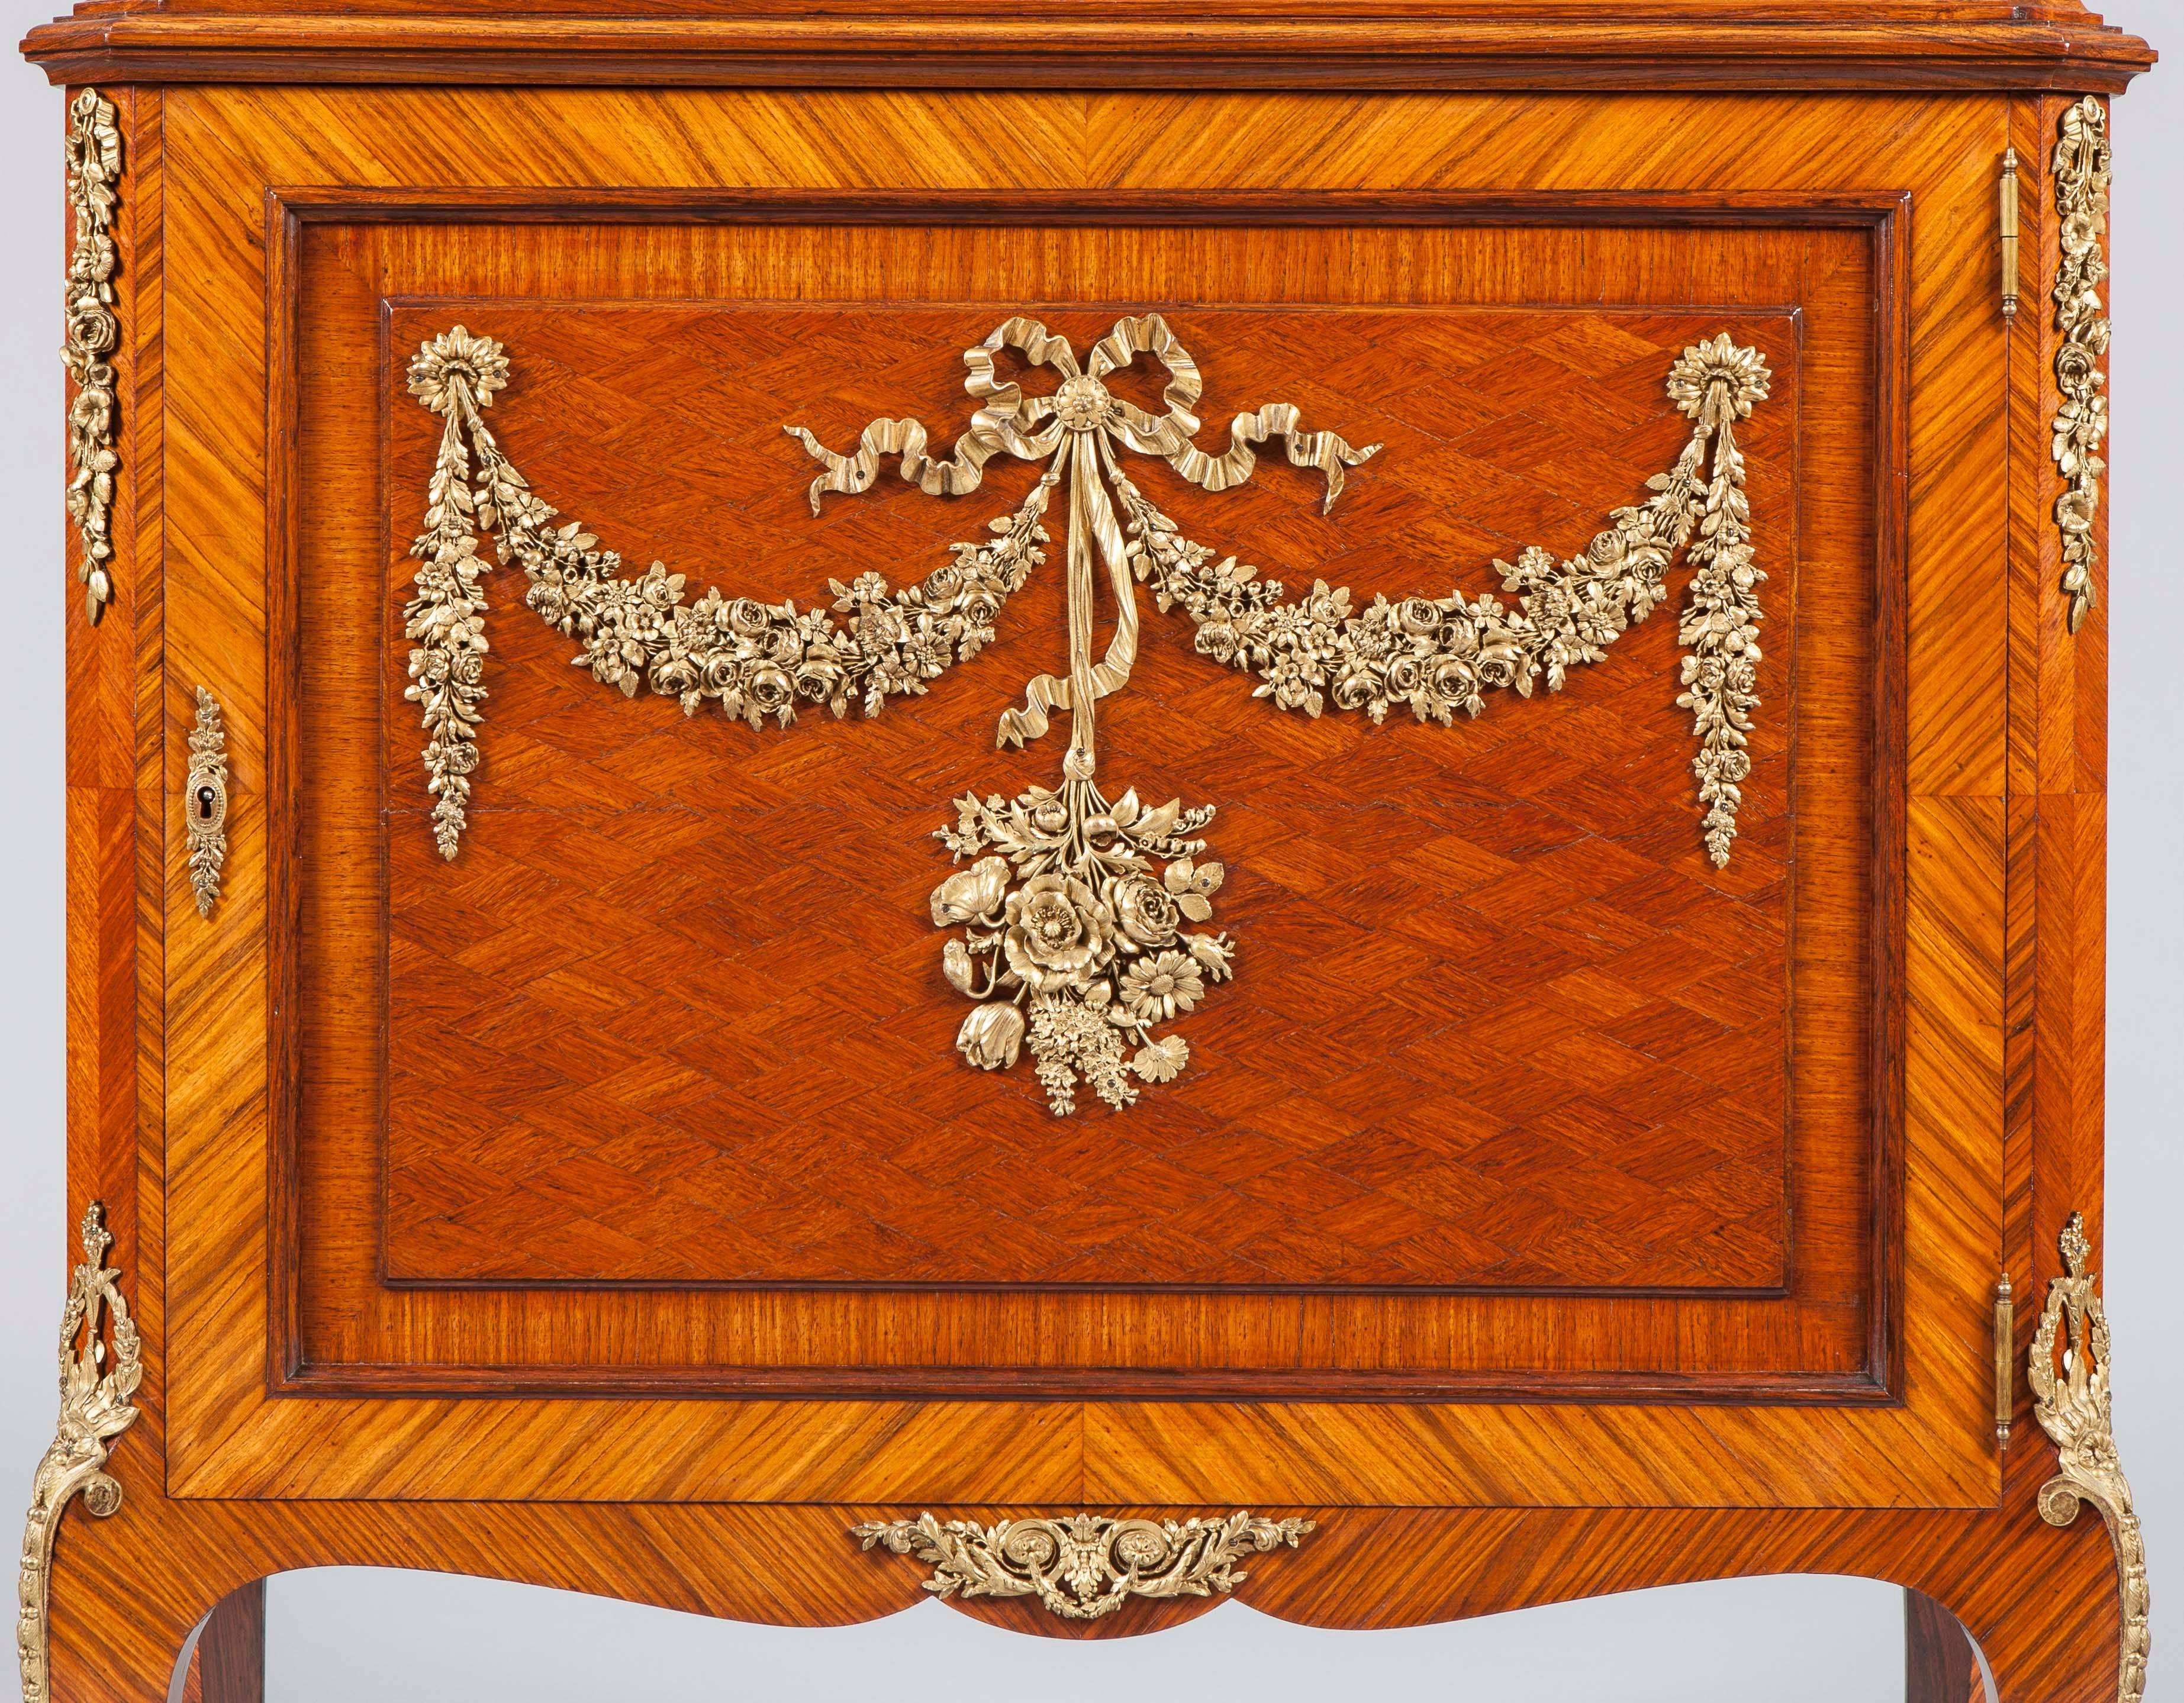 Vitrine française en parquet de bois de roi et montée en bronze doré.

De style Louis XV-XVI Transitionnel, en bois de roi et tulipier croisés et montures en bronze doré. La partie supérieure avec une frise de cavetto au-dessus d'une étagère en